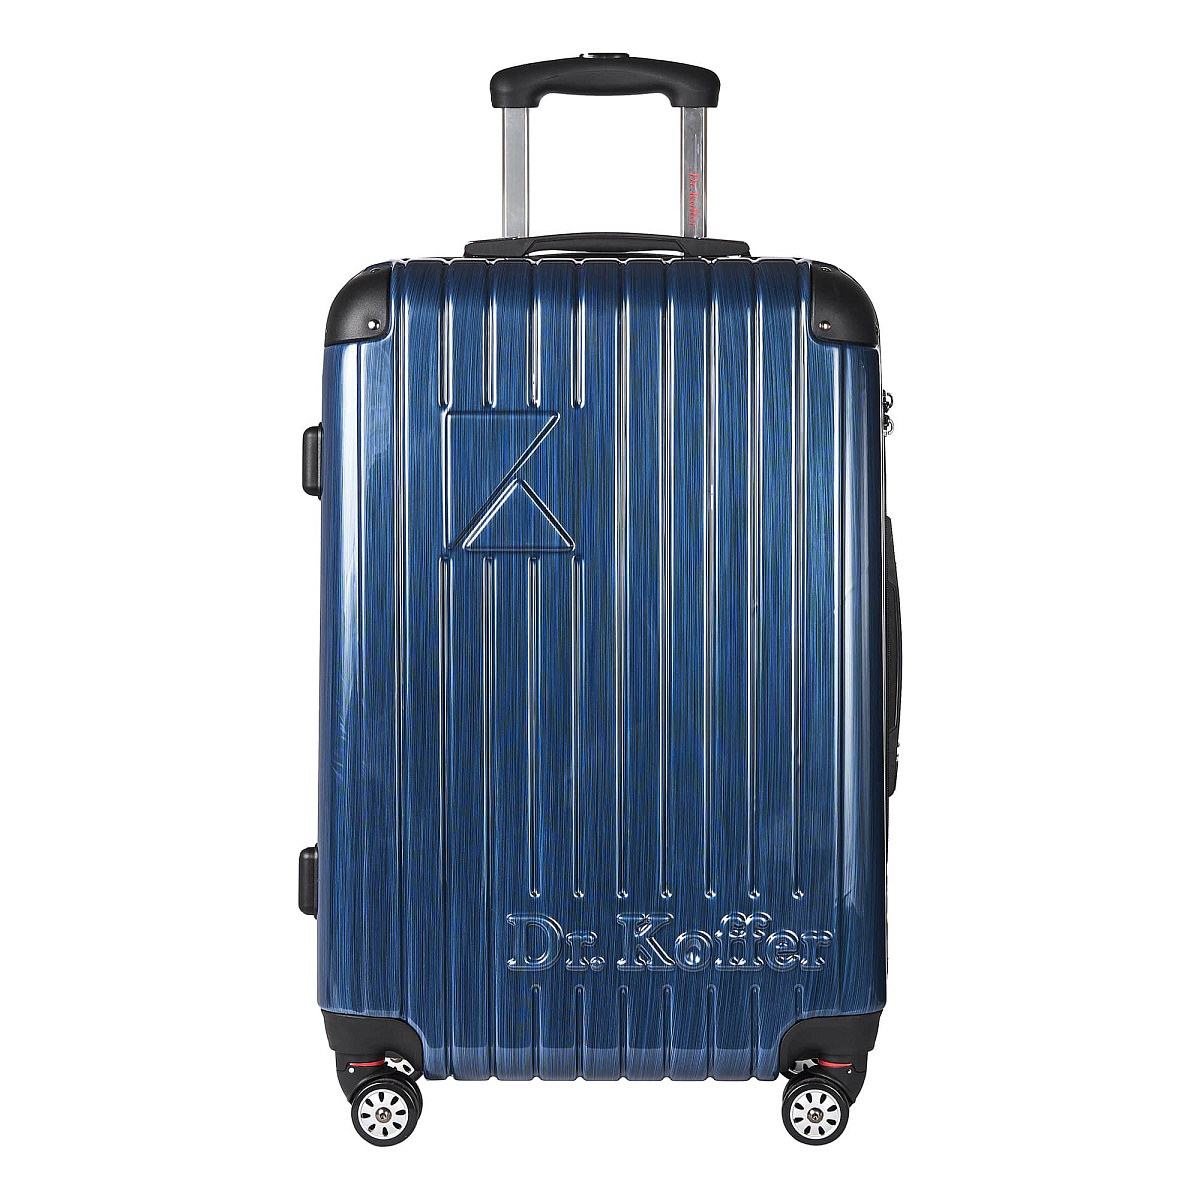 Др.Коффер L102TC28-250-60 чемодан